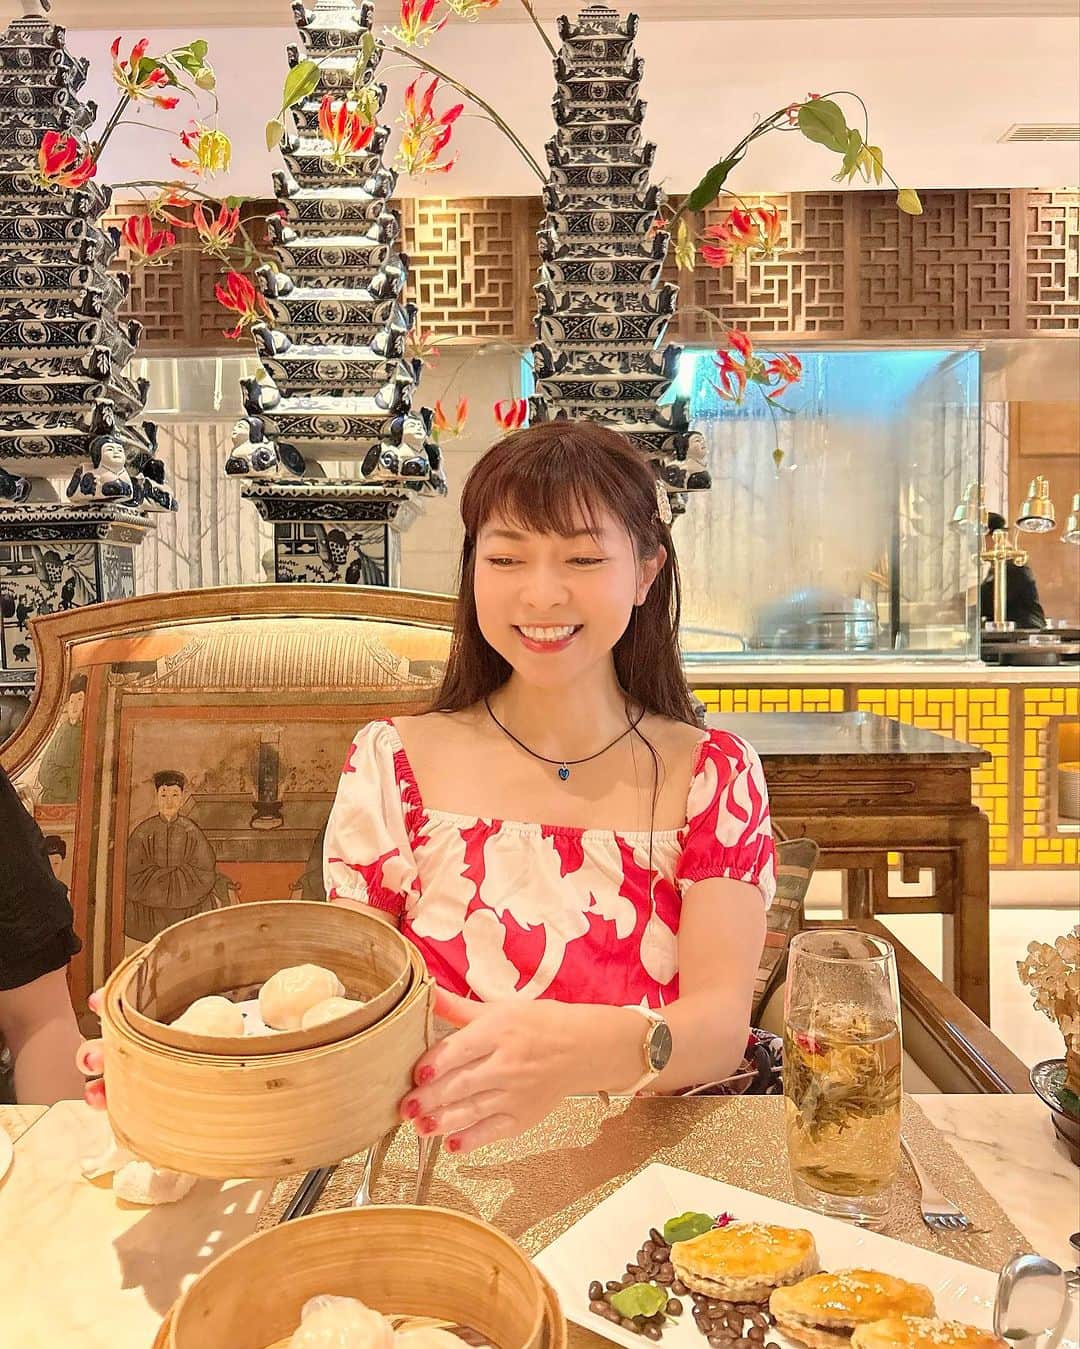 DJ MIYAのインスタグラム：「やっほ♡インドネシア・バリ島でいただく中華料理は特別に美味しかった💖  The Muliaさんのレストラン9つのうちここは中国料理がラグジュアリーに楽しめます(⁎⁍̴̆Ɛ⁍̴̆⁎)店内の内装がゴージャスでシノワズリーもちょっと入って大好きここ❤️中国様式とBalineseがmixtured されています♡  2日目ランチに『Table 8』でchainese cuisineをいただきました♡  Cantoneseのstyle Dim Sum（灣式ディムサム）を中心とした高級感あるディナーコースに舌鼓🎀  大好きな桃饅頭や海老焼売も小笼包もあって盛りだくさんでした♡  『Table 8』The Mulia Bali内  Lunch: Noon - 3 PM Dinner: 6 PM - 11 PM  Access: デンパサール(ングラ・ライ)国際空港から車で約25分  THE MULIA, MULIA RESORT & VILLAS - NUSA DUA, BALI  〒80363 Jalan Raya Nusa Dua Selatan Kawasan Sawangan, Nusa Dua Bali, Indonesia  Jl. Raya Nusa Dua Selatan, Kawasan Sawangan Nusa Dua 80362 Bali, Indonesia  T: +62.361 301 7777  Web site  https://www.themulia.com/bali/themulia/the-earl-suite English  https://www.themulia.com/jp/bali/themulia/the-earl-suite  ◉開業:2012年 ◉レストラン 9つあり ◉プール4ヶ所あり ◉Wifi:あり ◉ウォシュレット:あり（自動センサー） ◉三棟に構成された巨大リゾート  #バリ島グルメ #Table8 #ムリアリゾート #MuliaResortNusaDuaBali #Baliisland #バリ島 #バリ旅行 #バリ島旅行 #TheMulia #MULIARESORT #海外旅行 #バリホテル #海外ホテル #リゾートホテル #ビーチリゾート #ホテル #インドネシア #インドネシア旅行 #ラグジュアリーホテル #旅好き女子 #トラベラー #トラベルインフルエンサー #インフルエンサー #インスタグラマー #旅行記 #南国リゾート #ホテル宿泊  #ヌサドゥア #マイトリップMIYA」